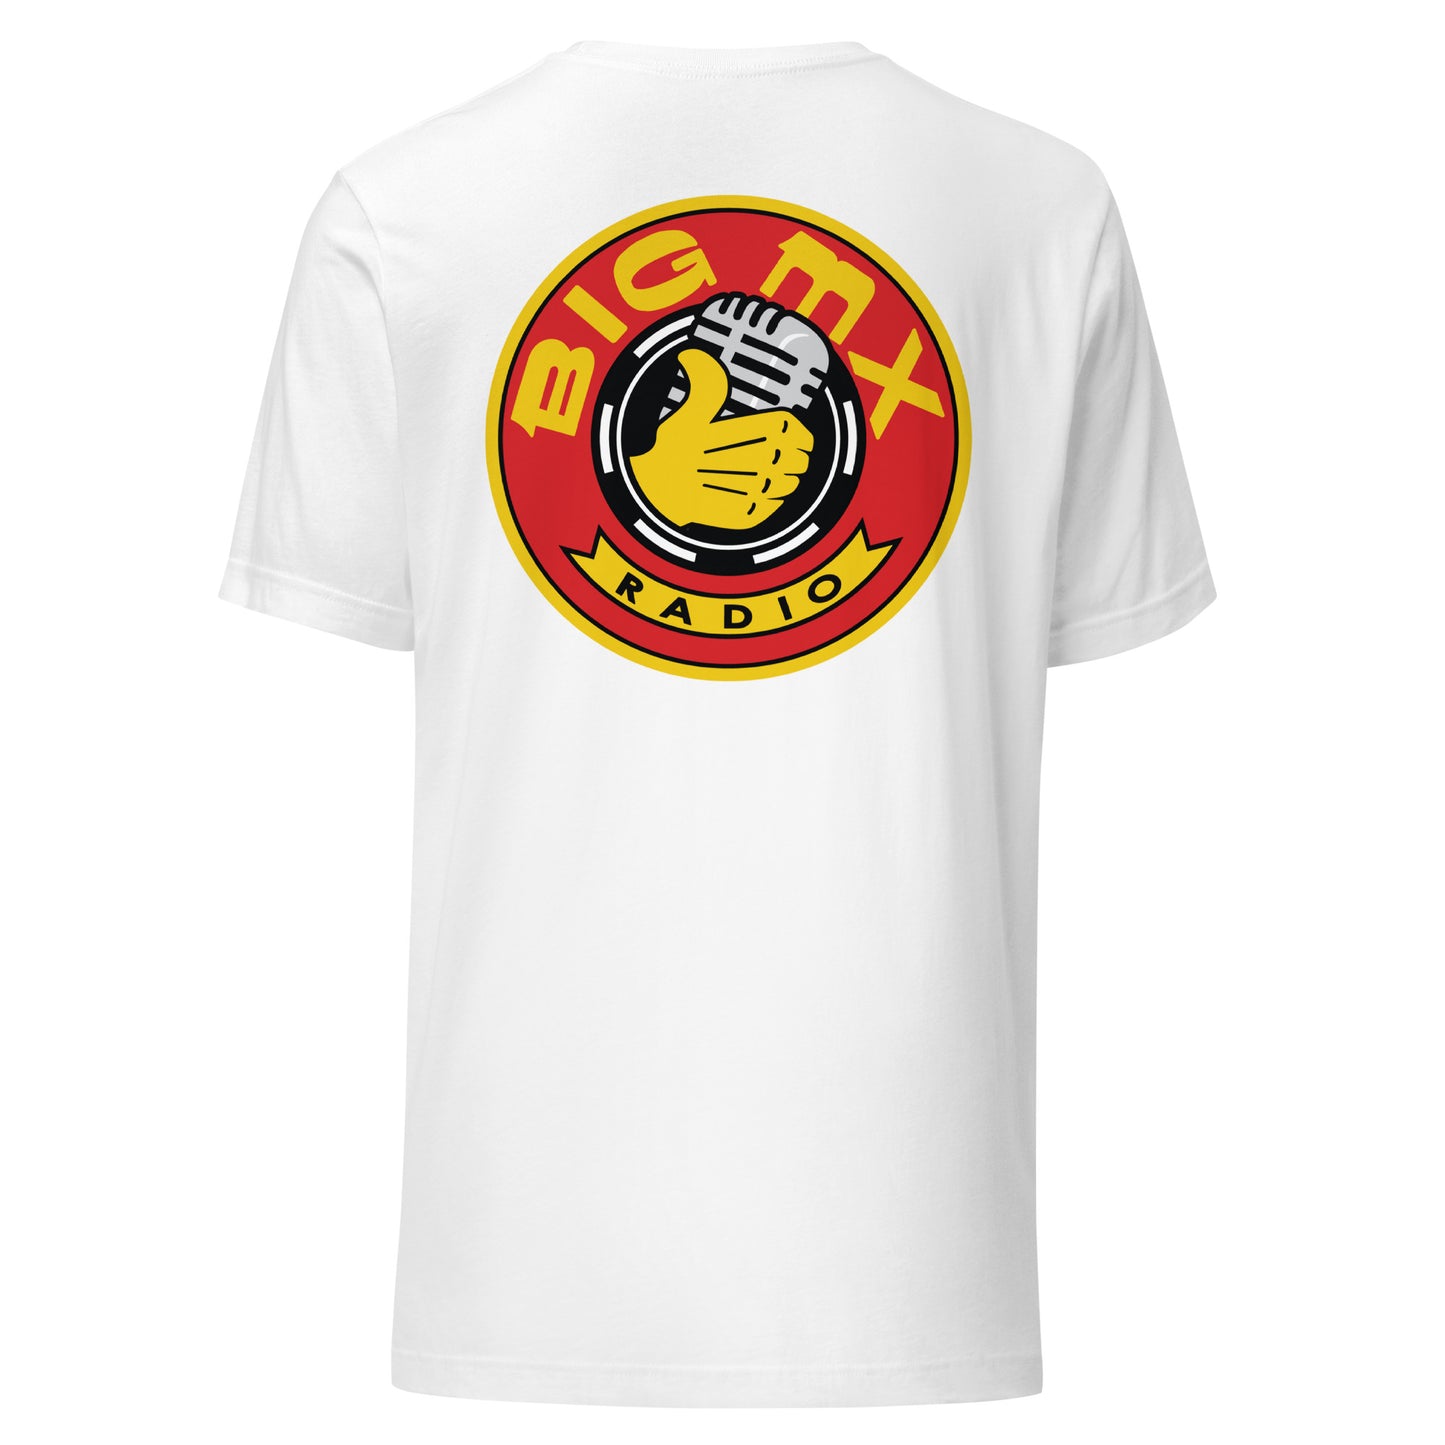 Big MX Radio Unisex T-Shirt